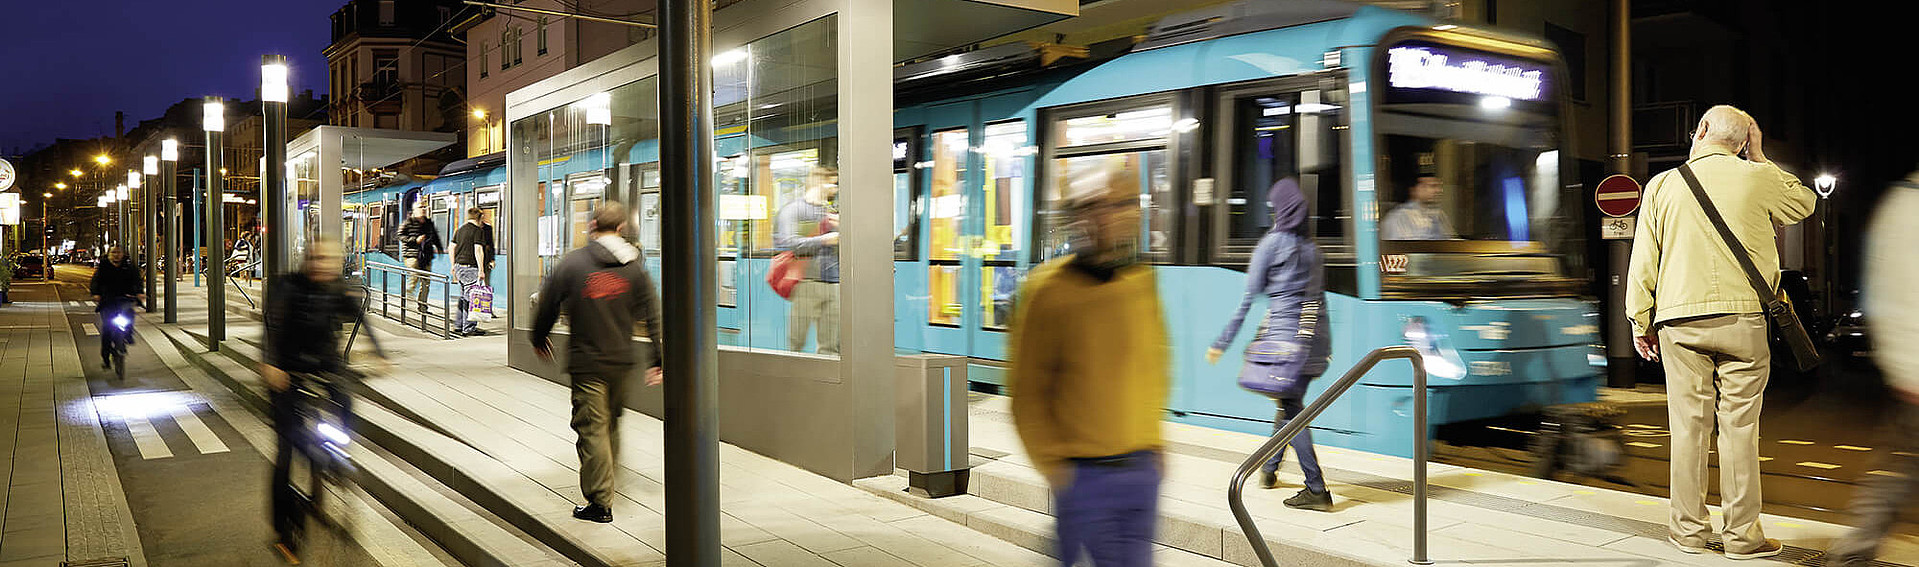 VGF-U-Bahn bei Nacht umgeben von Menschen, die auf die Bahn warten